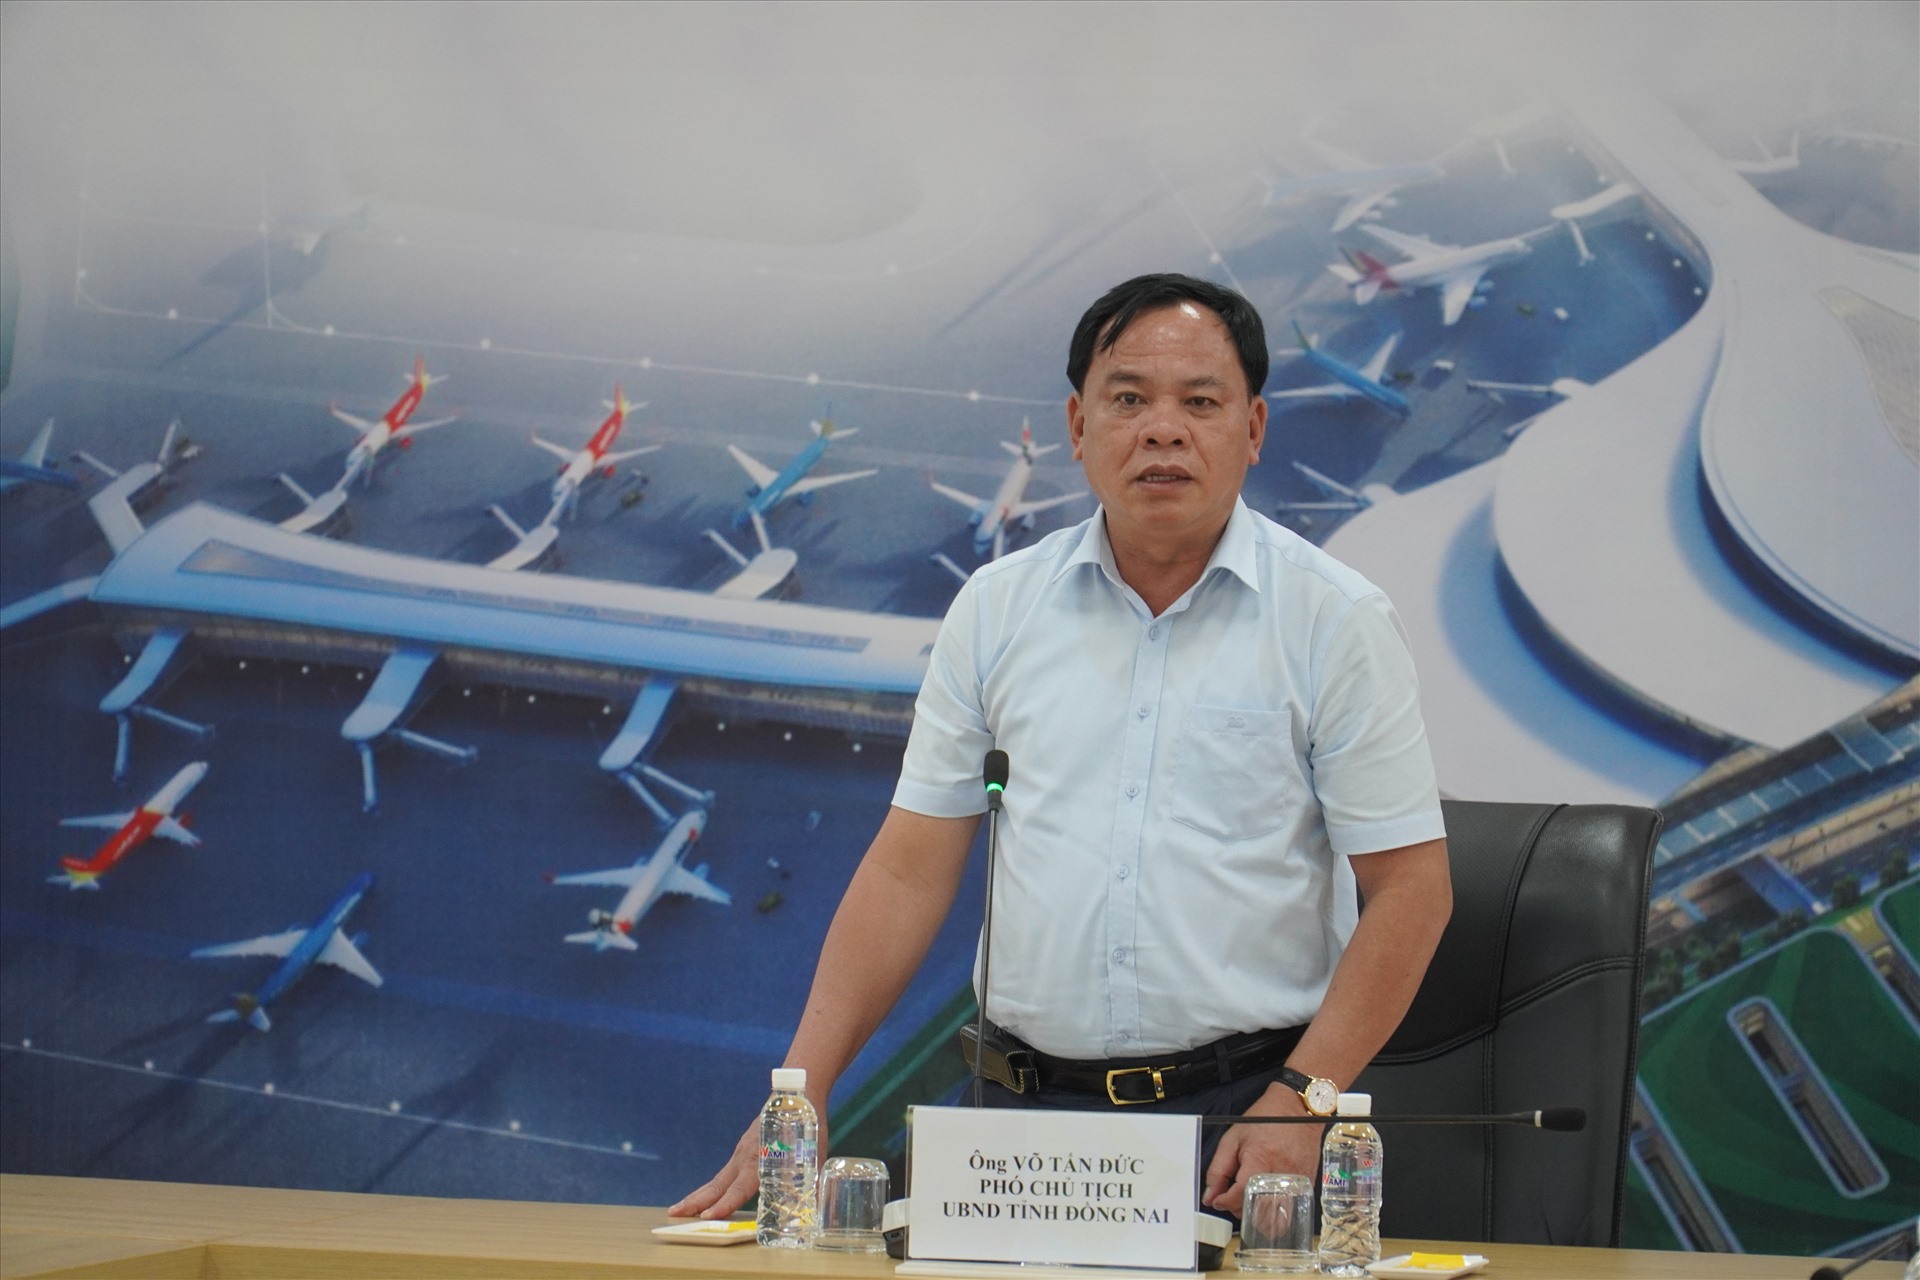 Ông Võ Tấn Đức - Phó chủ tịch UBND tỉnh Đồng Nai tại buổi làm việc về giải phóng mặt bằng dự án sân bay Long Thành. Ảnh: Hà Anh Chiến